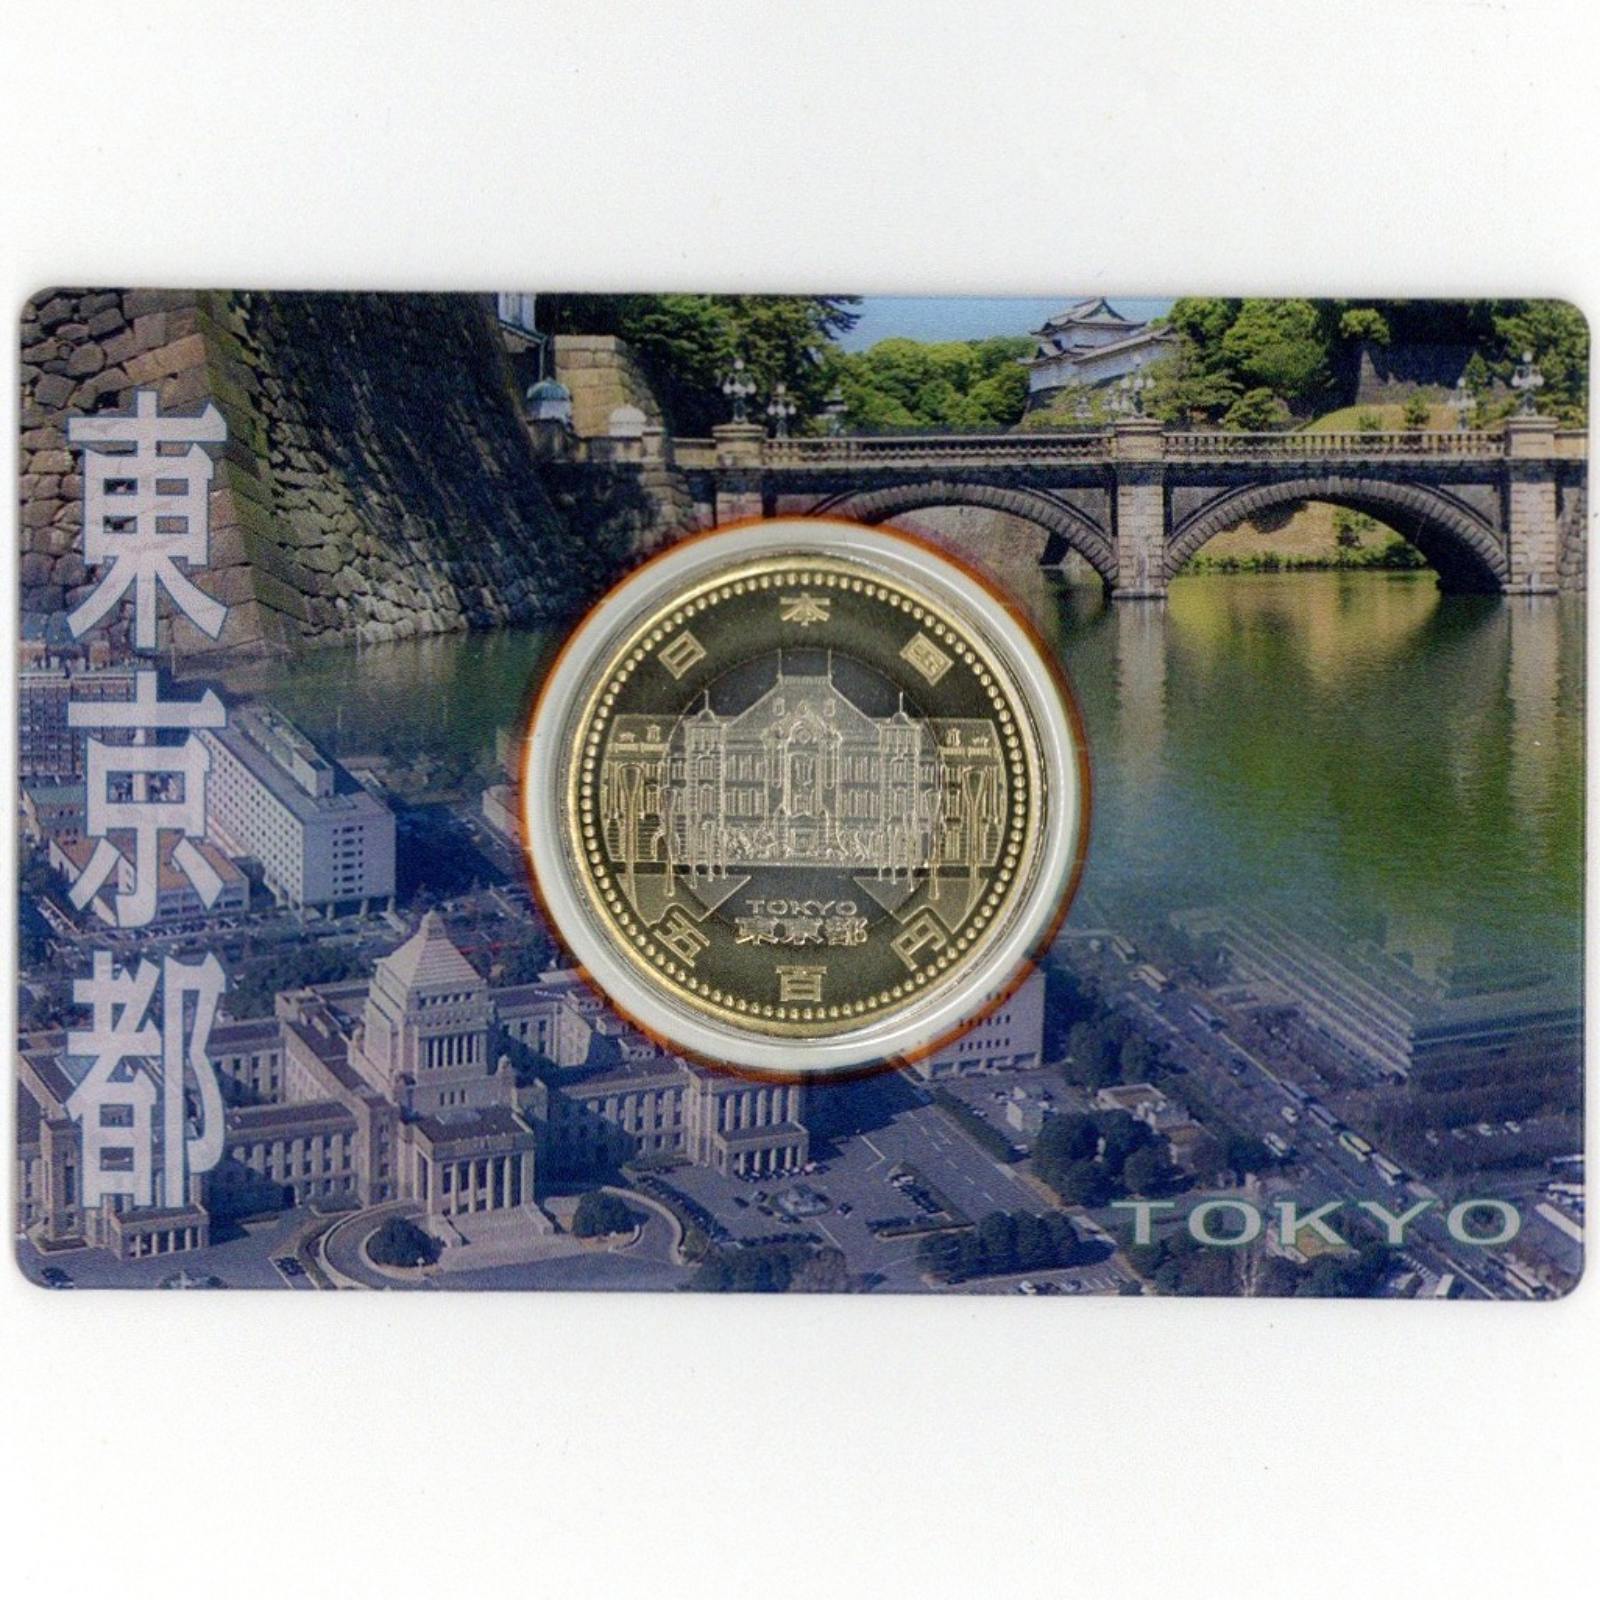 地方自治 60周年記念500円バイカラー・クラッド貨幣カード 東京都 